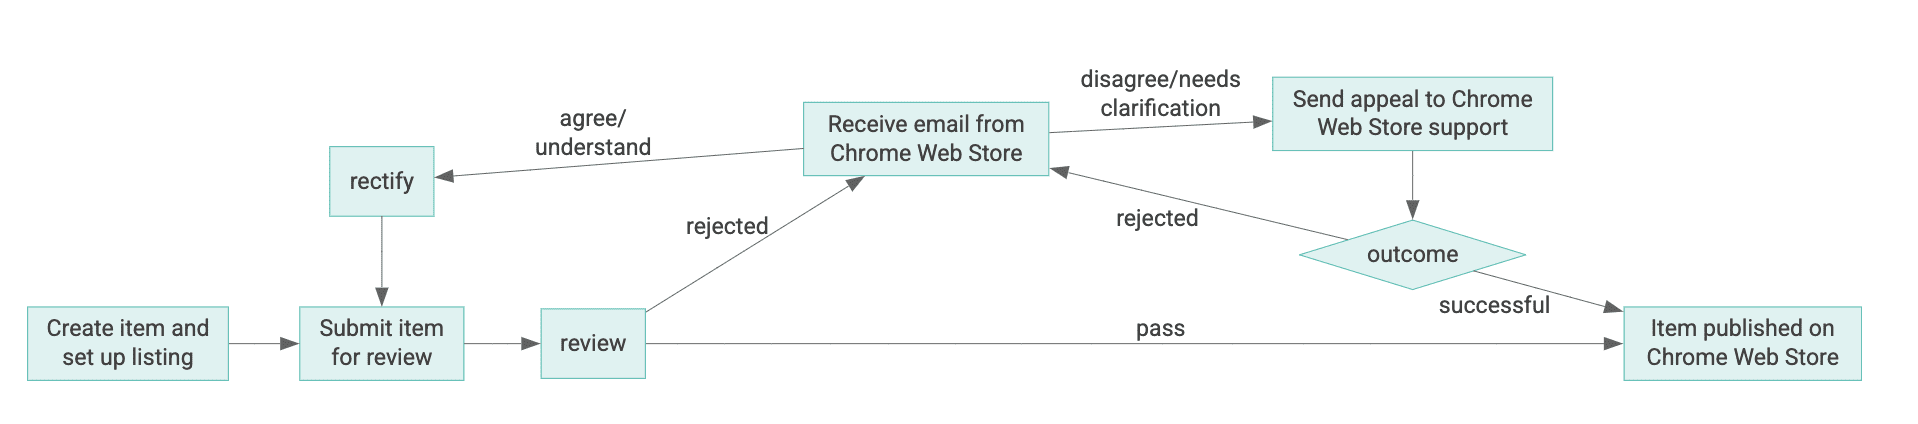 Схема жизненного цикла элемента Интернет-магазина Chrome